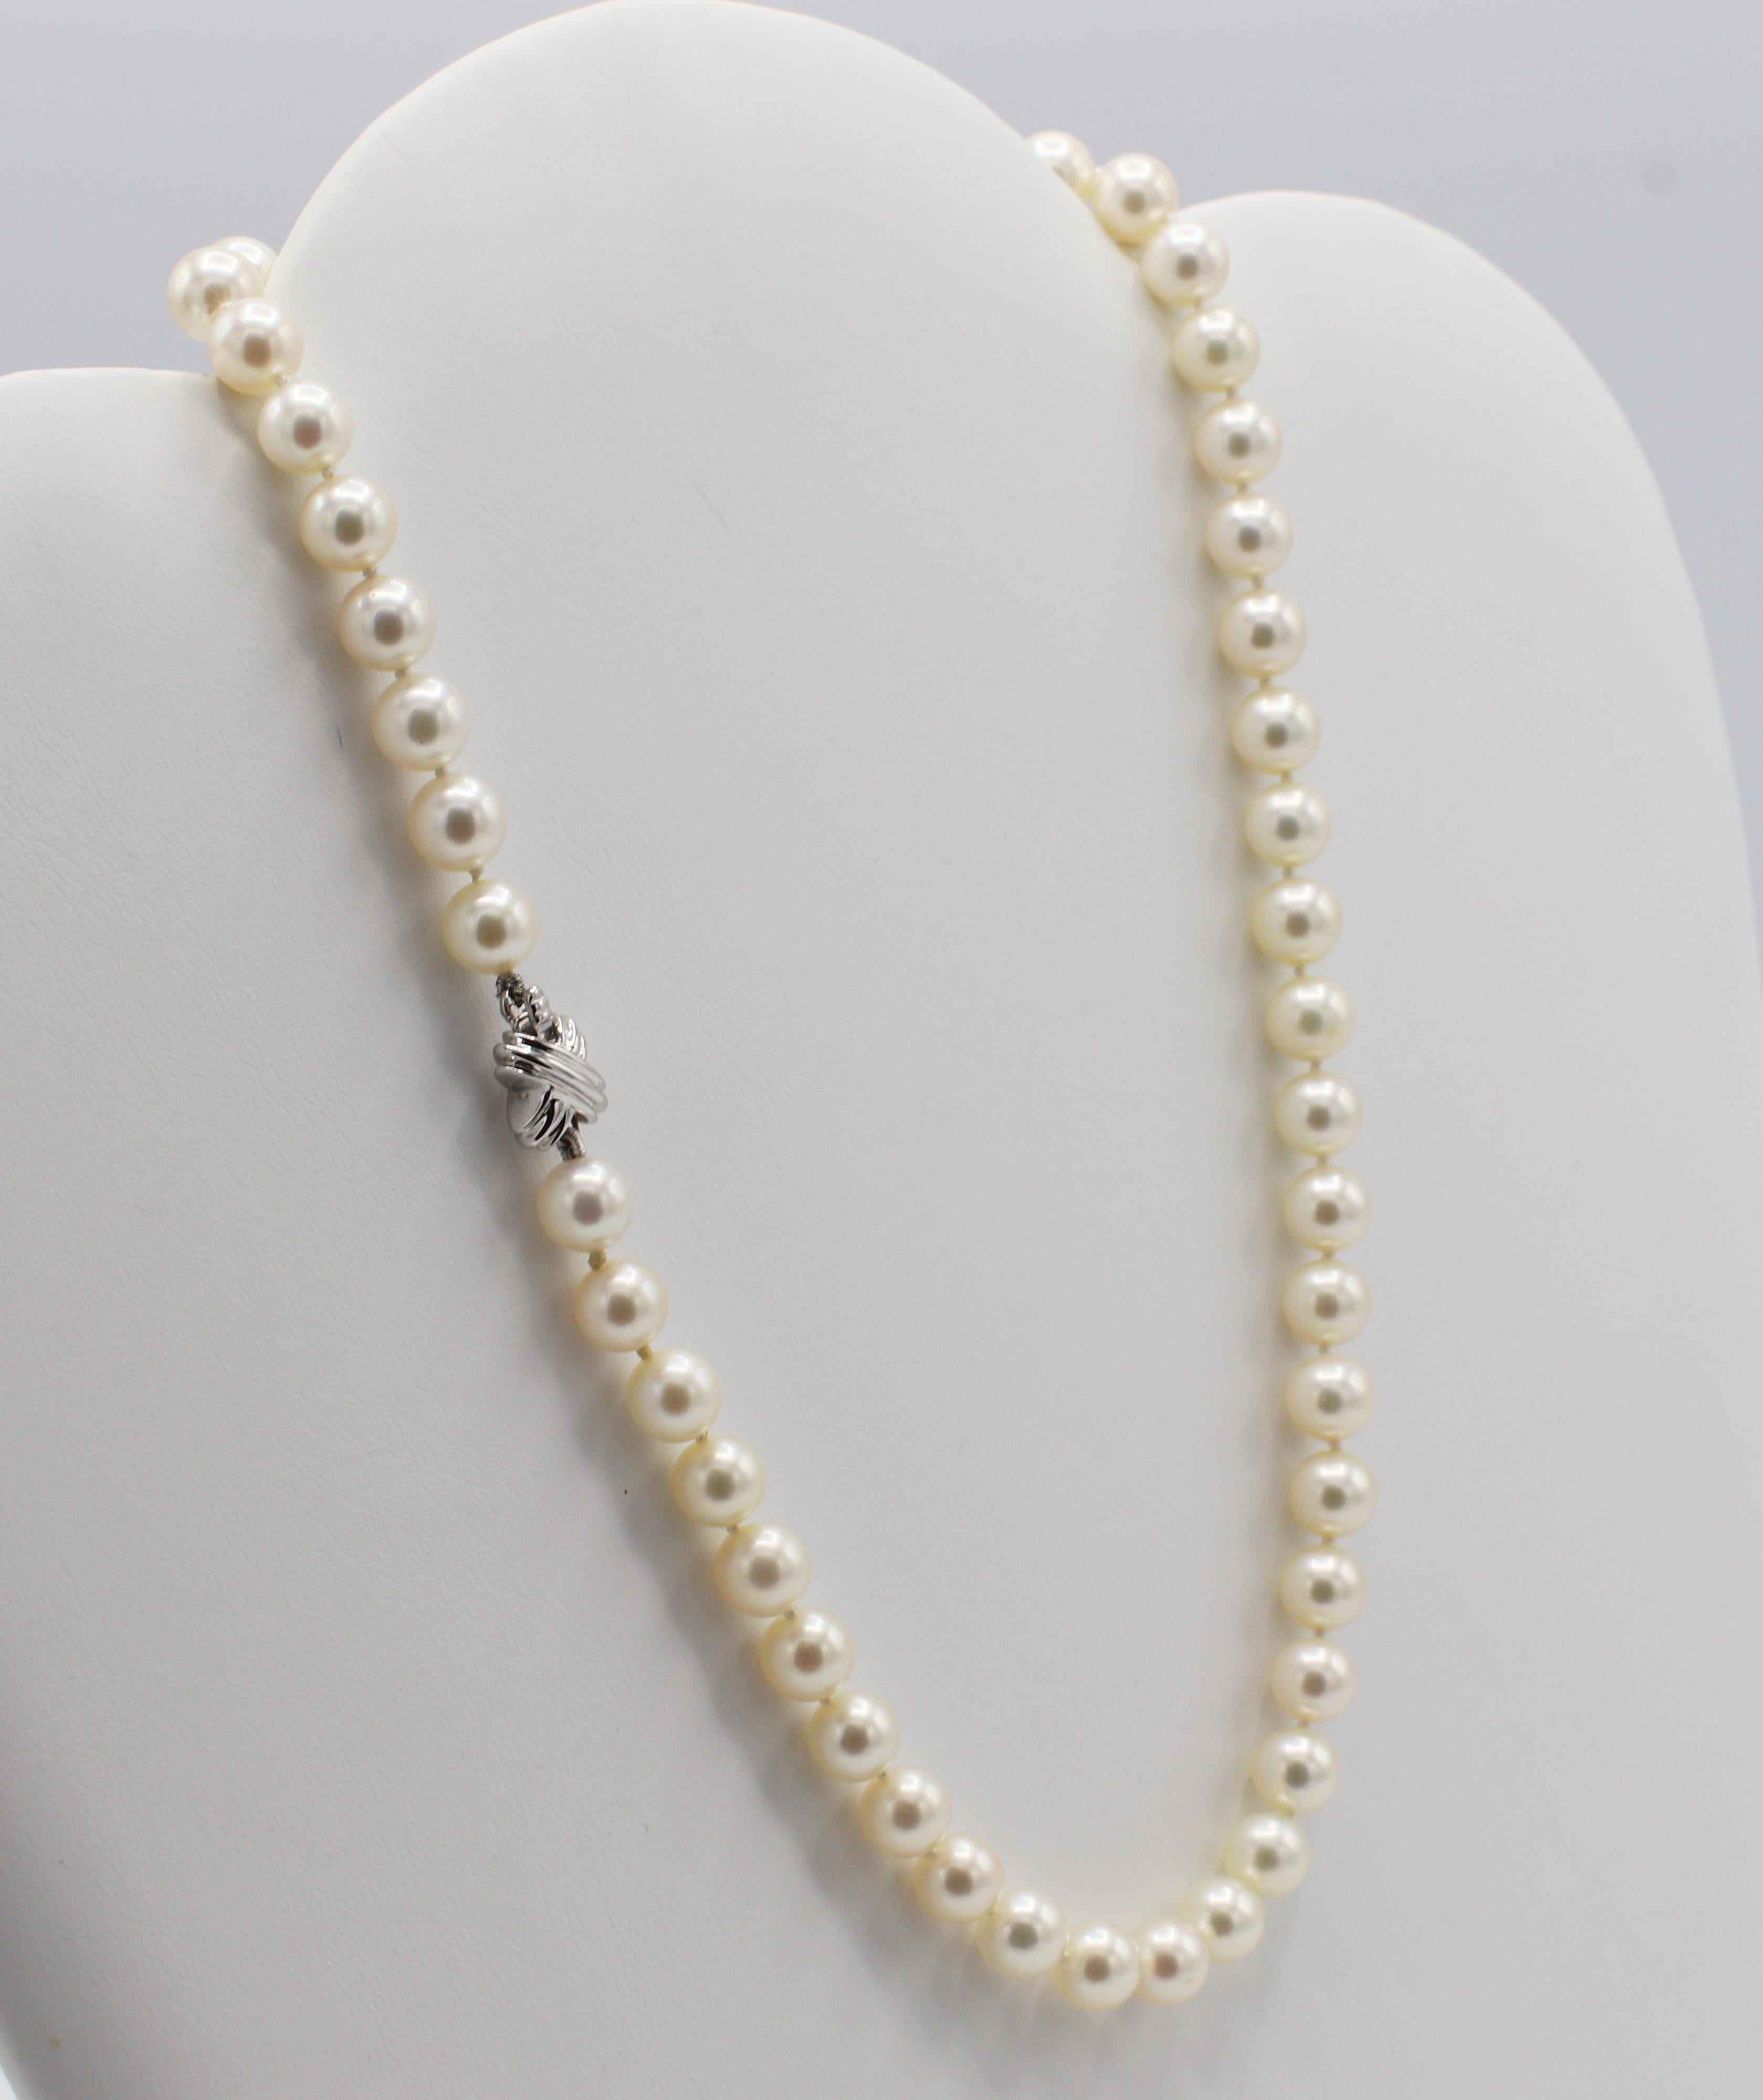 Tiffany & Co. Or blanc 18 carats Perle de culture Akoya 7mm Signature X Necklace 
Métal : fermoir en or blanc 18k 
Poids : 30.5 grammes
Longueur : 16 pouces 
Perles : Perles de culture Akoya de 7 mm
